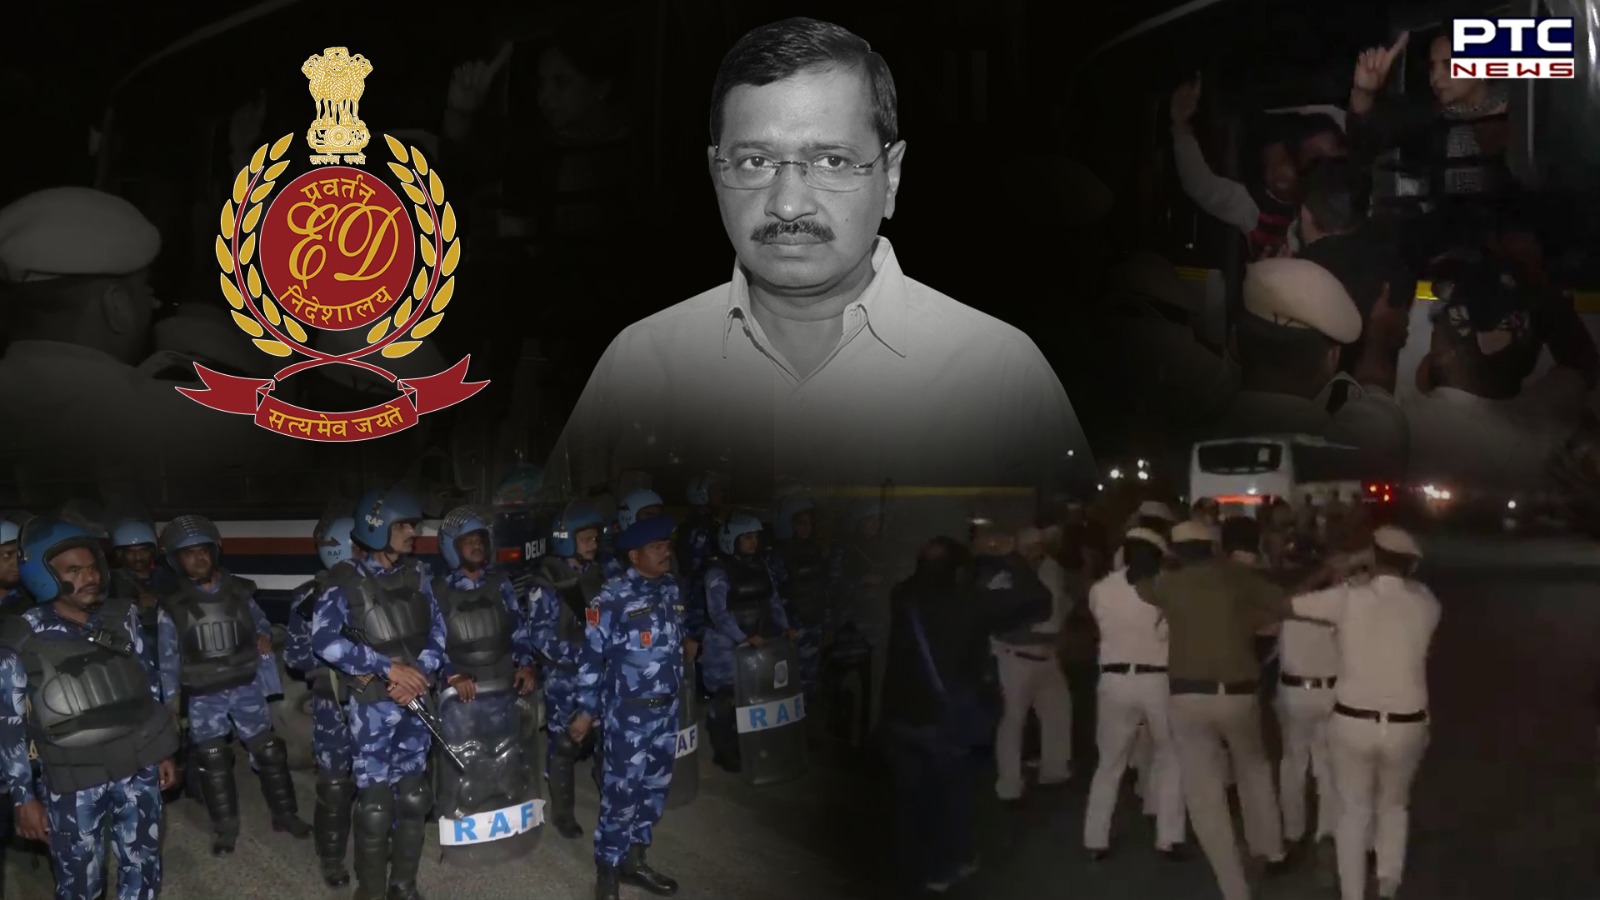 'Murder of democracy': Political leaders condemn Arvind Kejriwal's arrest